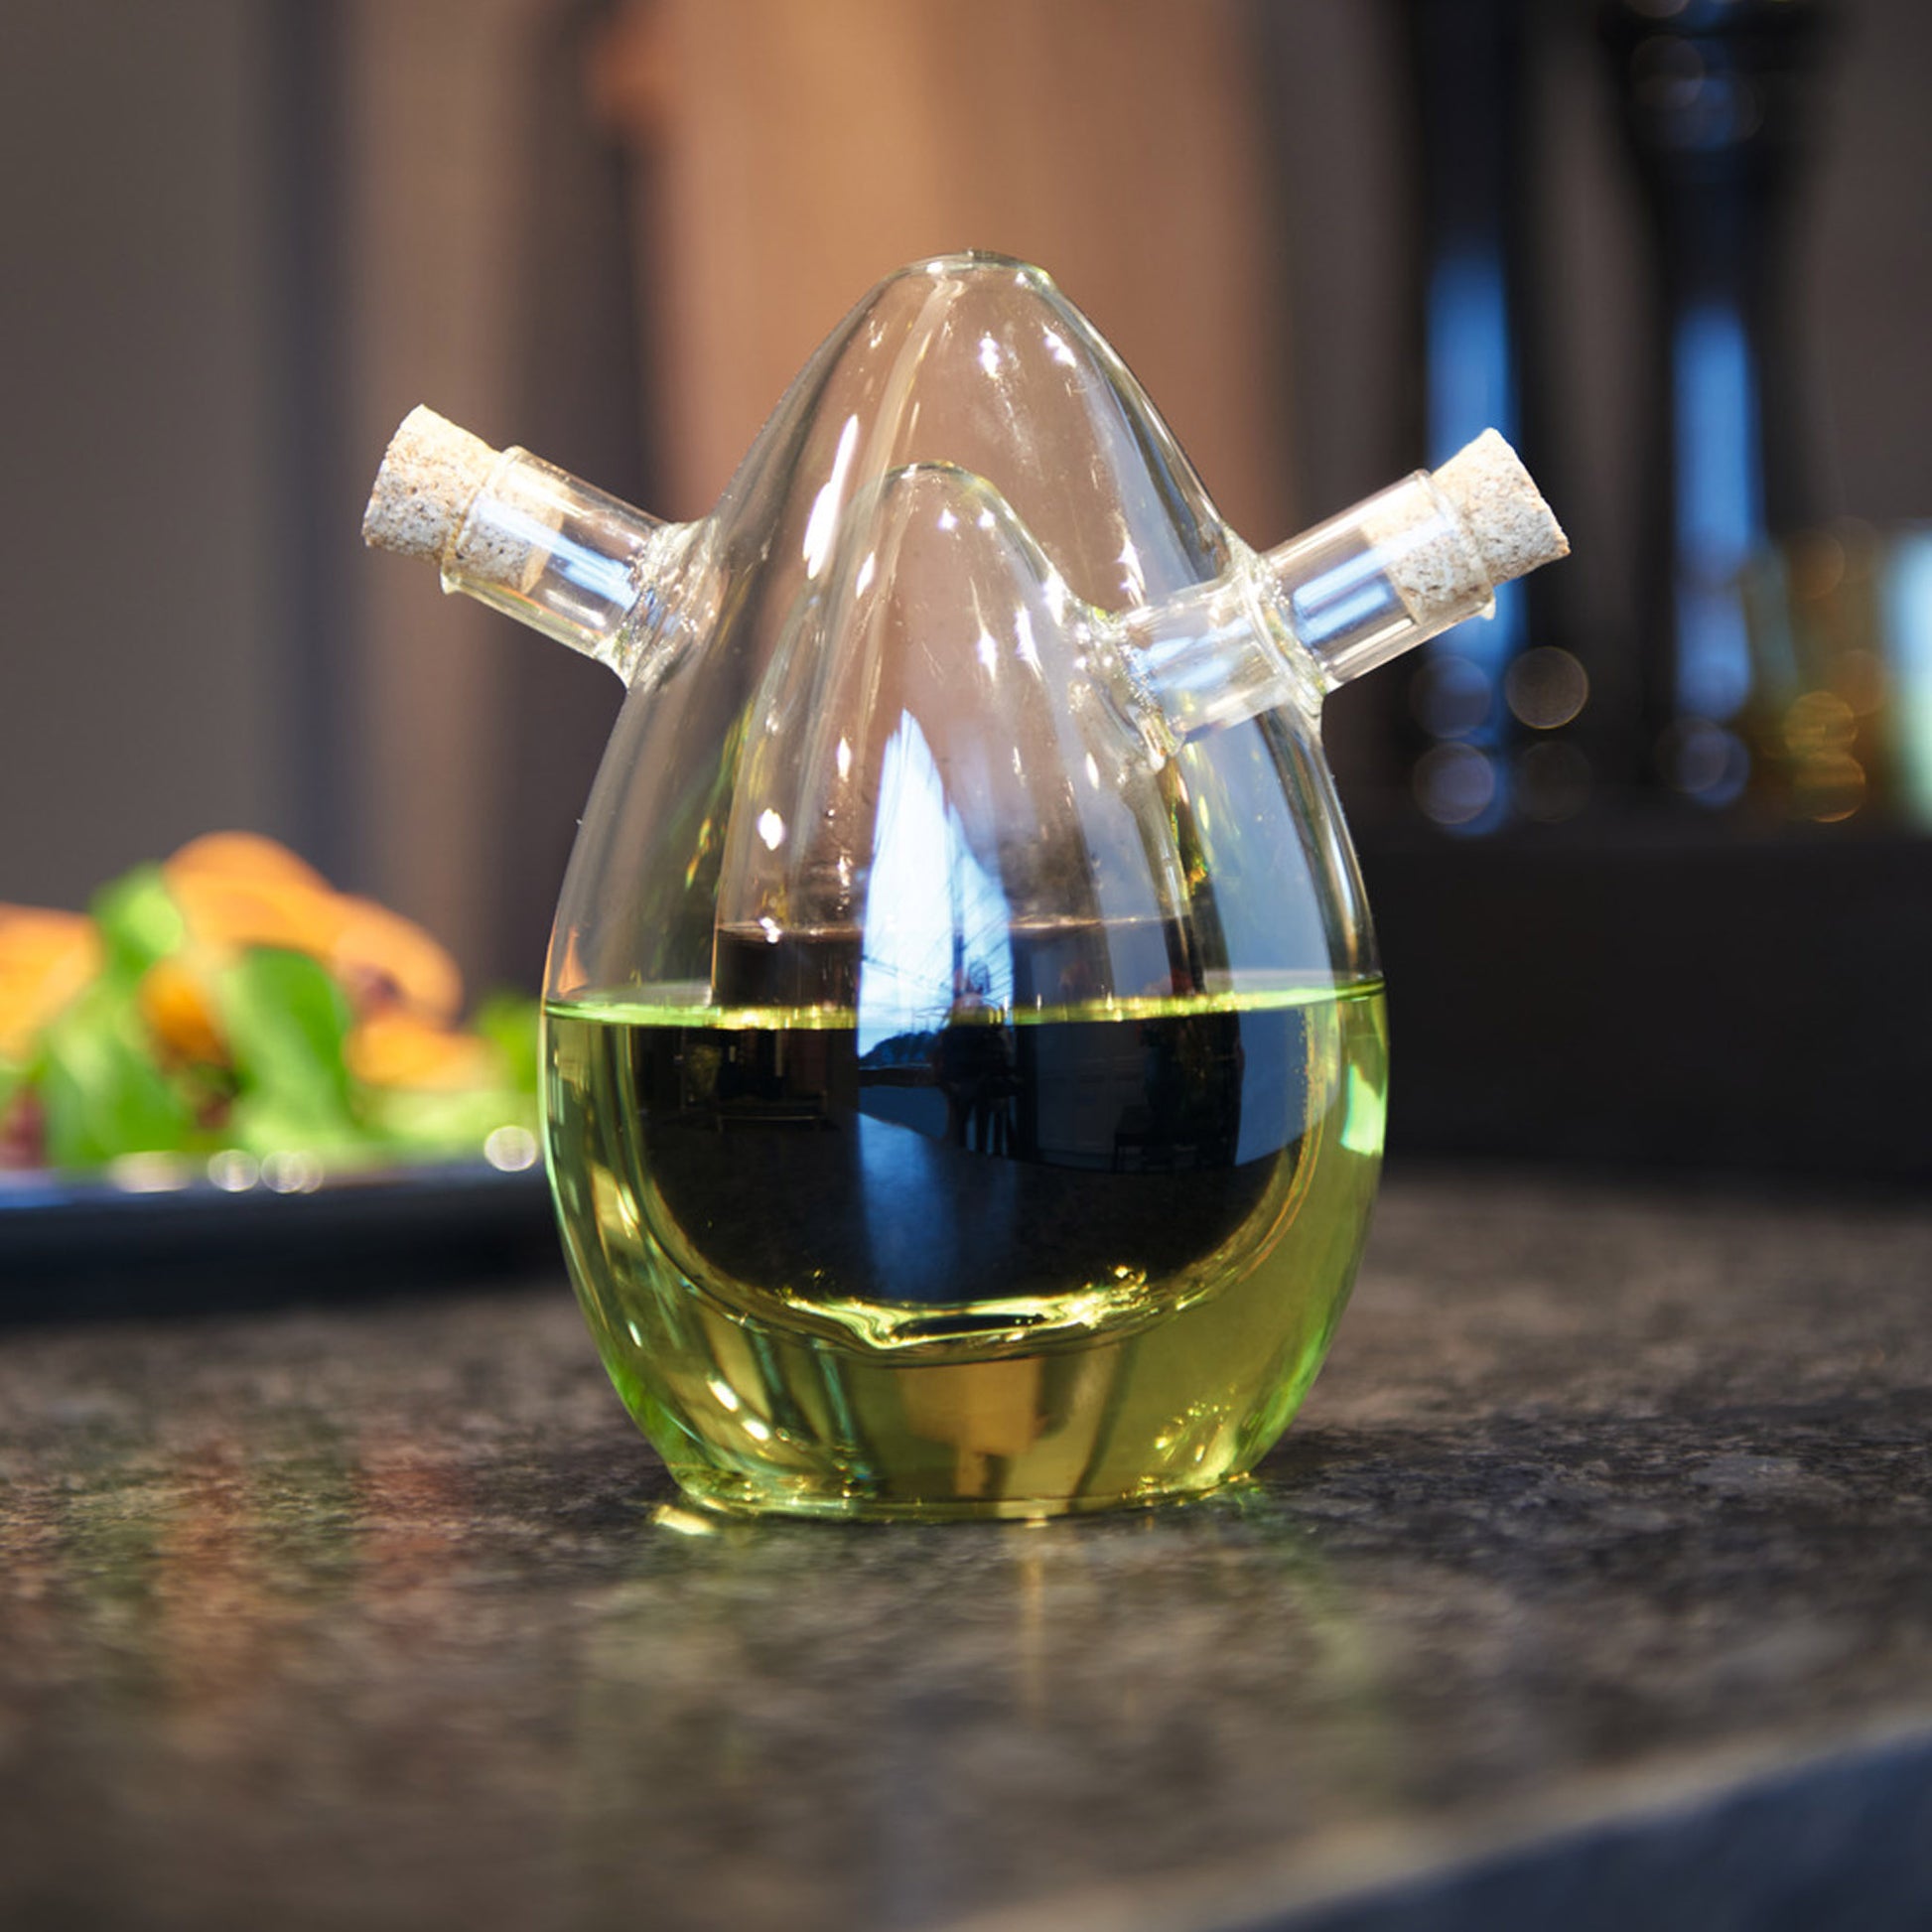 Cucina olje- och vinägerbehållare 2 i 1 av glas från Leonardo